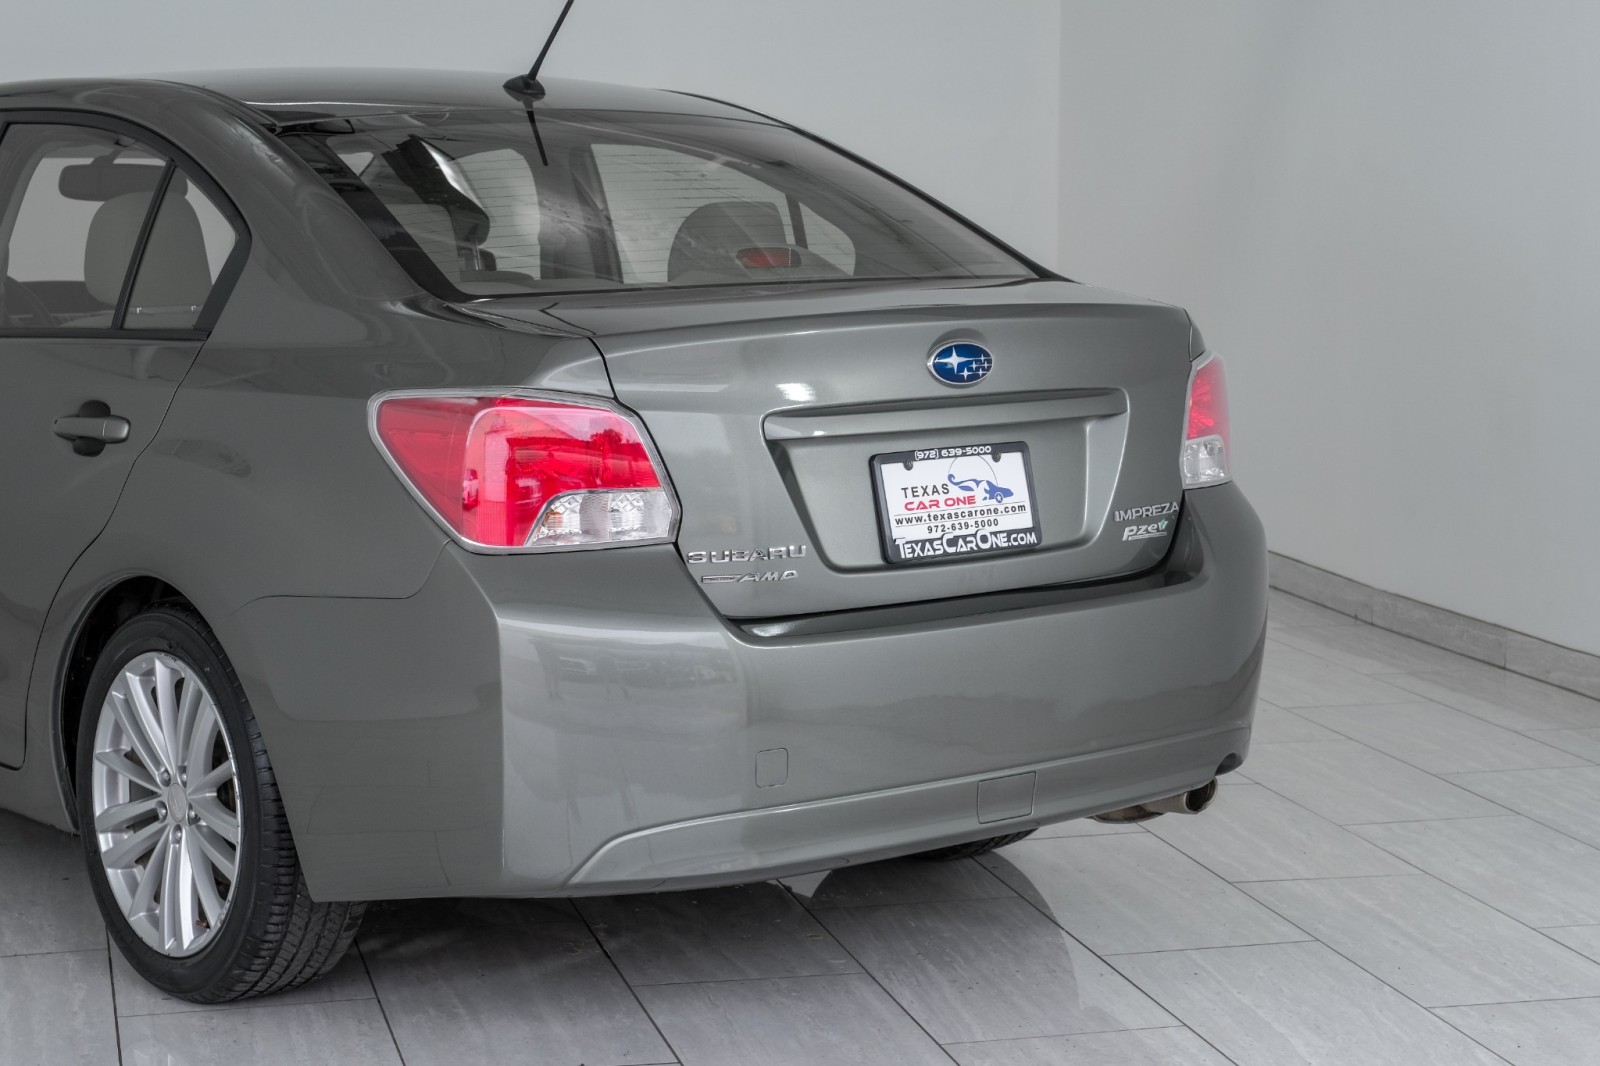 2014 Subaru Impreza Sedan 2.0i PREMIUM AWD AUTOMATIC SUNROOF HEATED SEATS PA 19